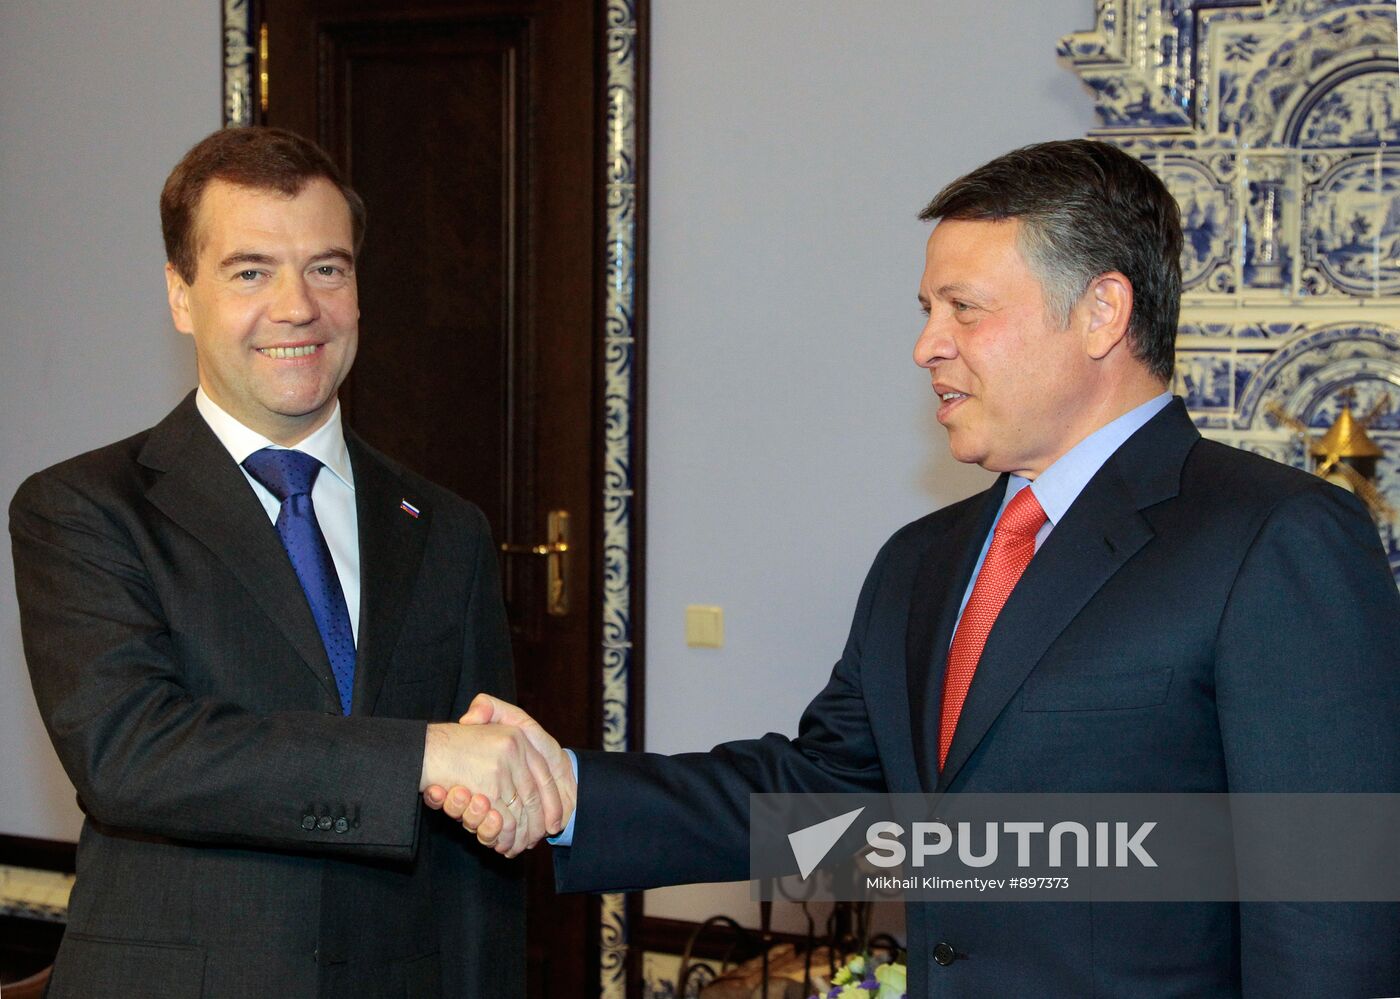 Dmitry Medvedev meeting Abdullah II